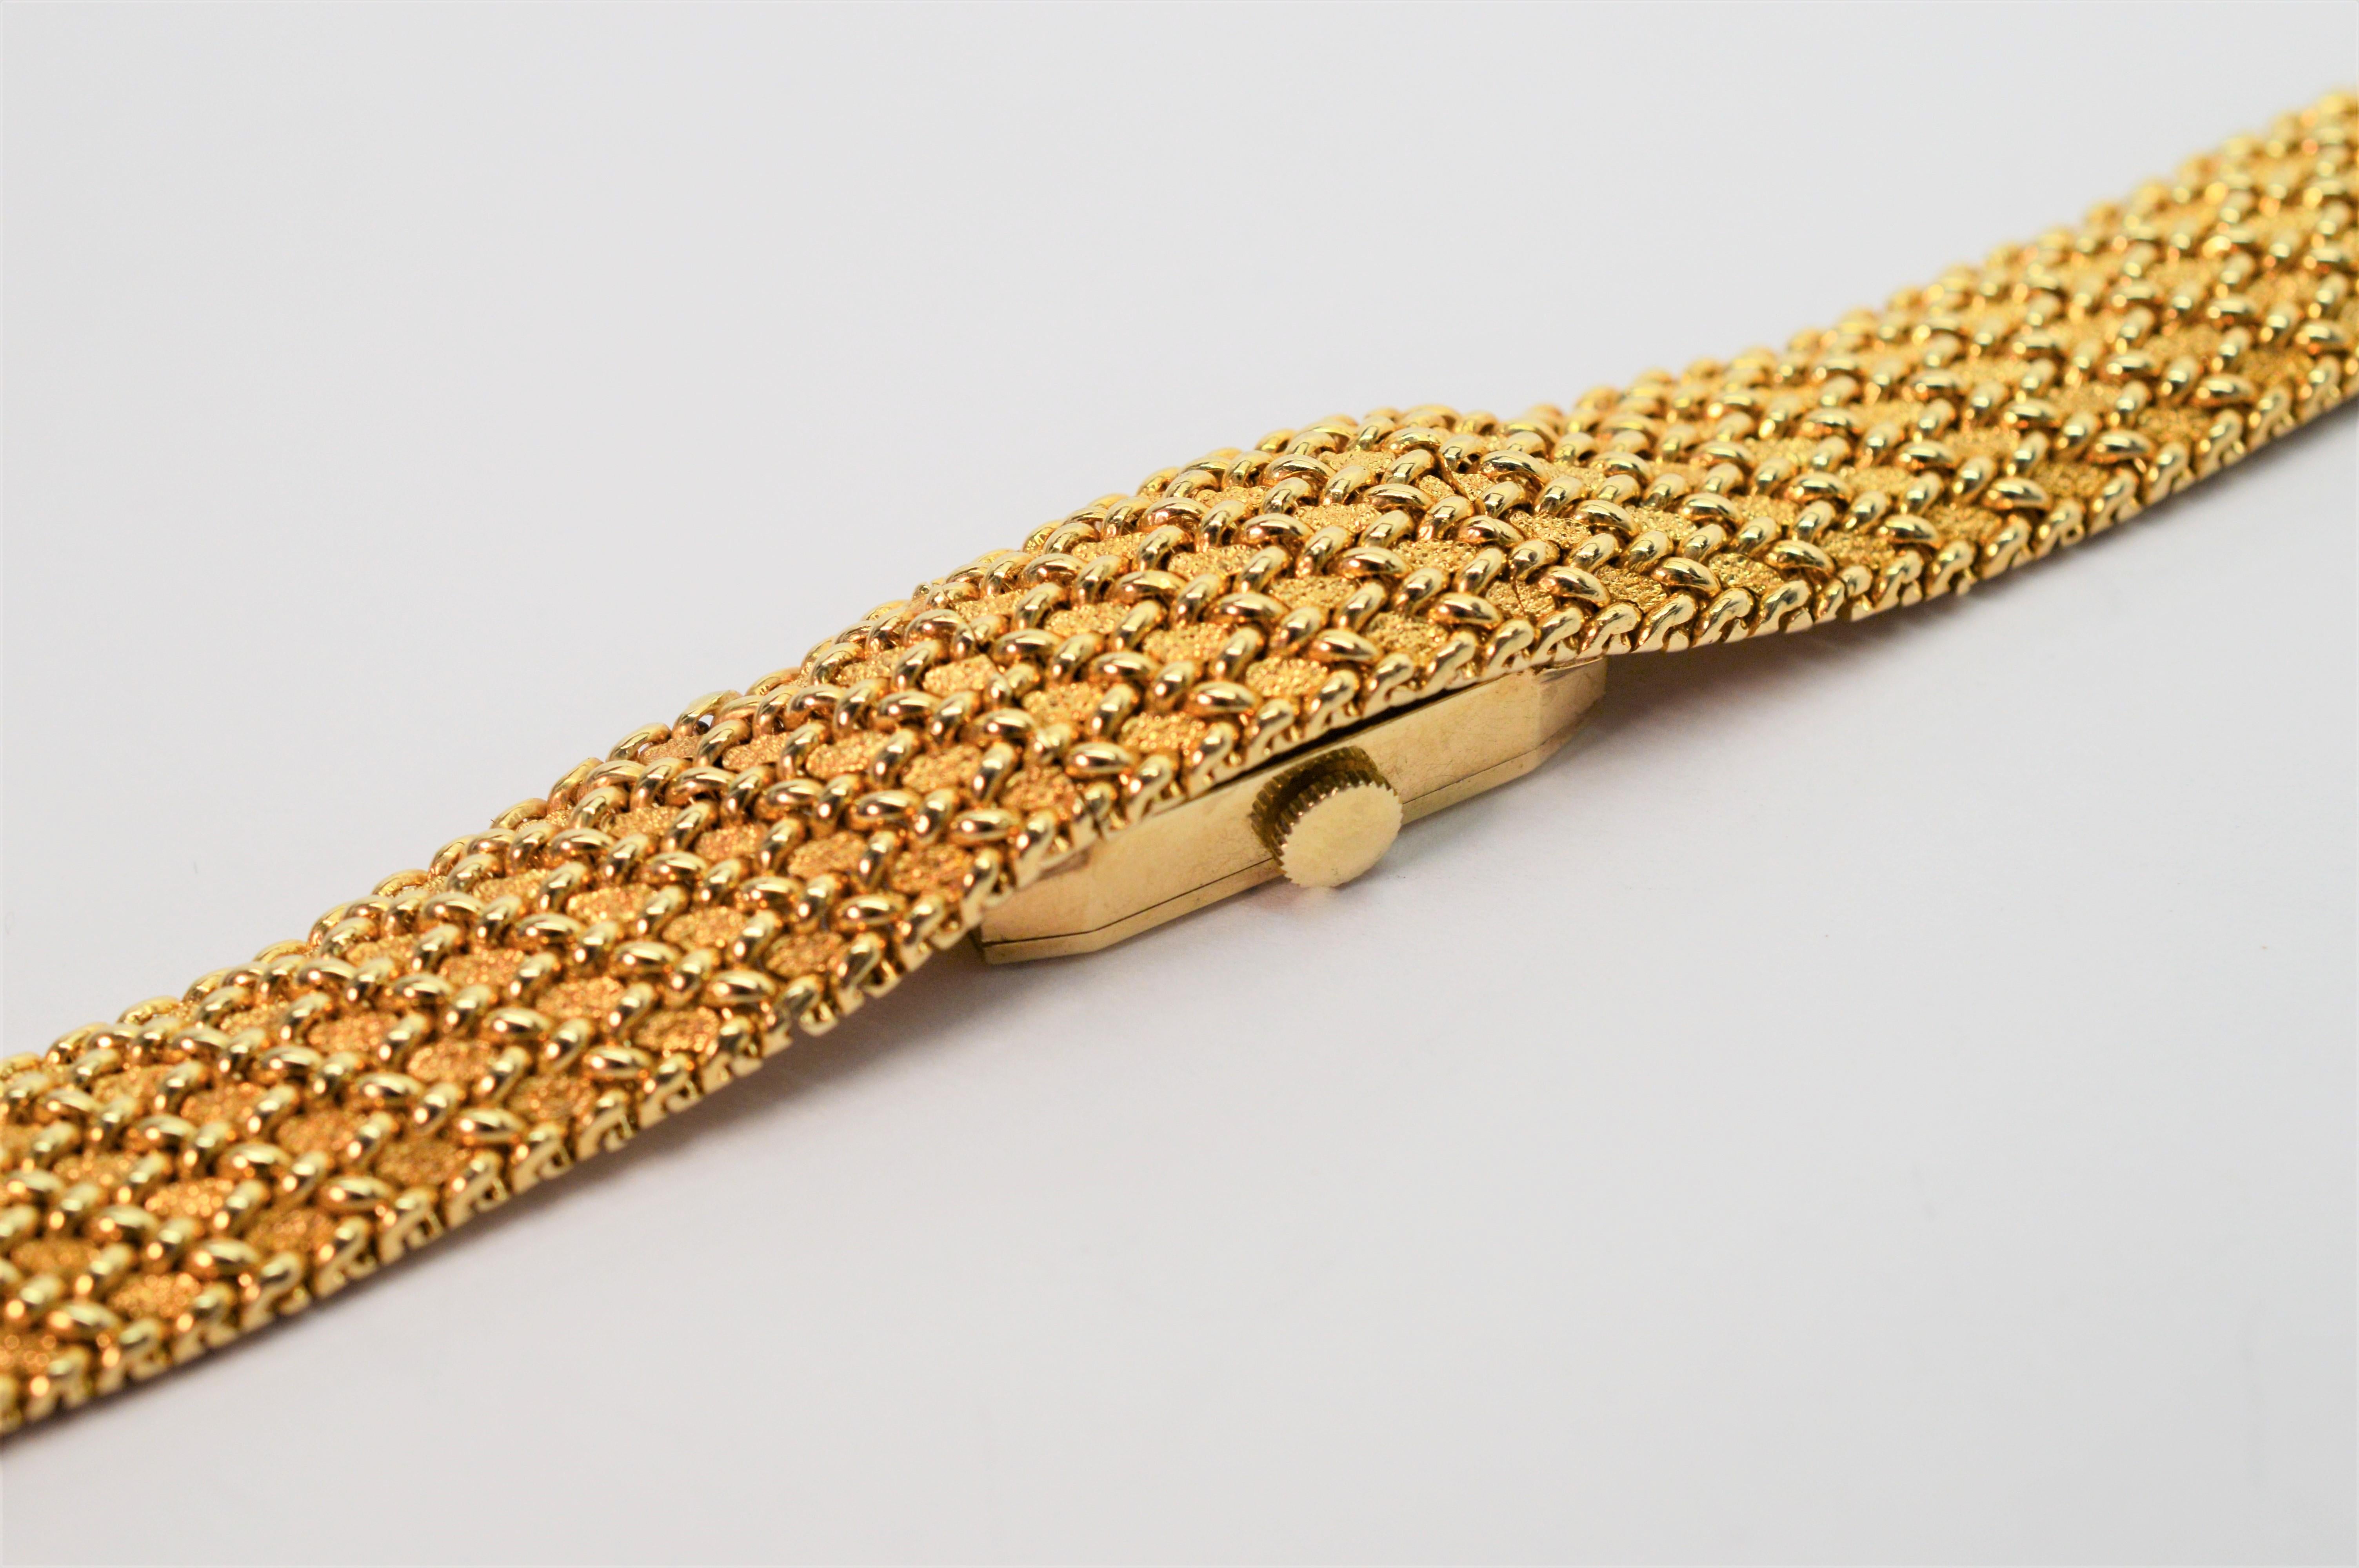 Portez l'heure avec une véritable élégance. Un bracelet en maille d'or finement tissée en or jaune quatorze carats constitue une pièce élégante à accessoiriser en toute occasion. Une montre cachée de l'horloger suisse de luxe Concord est intégrée à